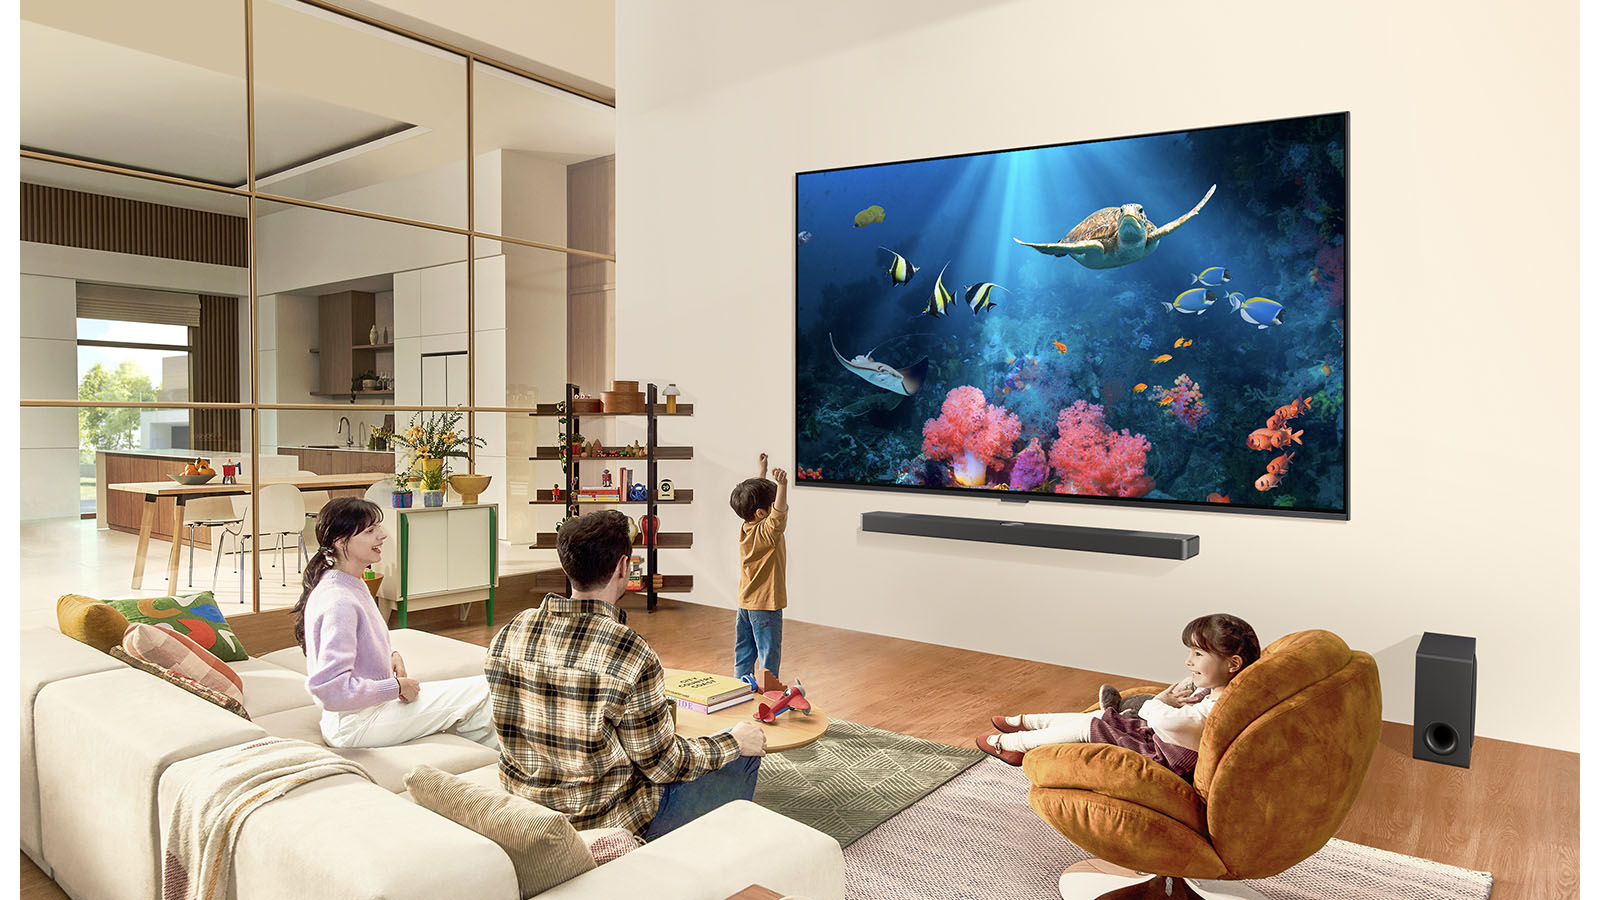 Eine Familie in einem Wohnzimmer mit einem ultragrossen LG-Fernseher an der Wand, auf dem eine Meeresszene mit Korallen und einer Schildkröte abgebildet ist.	